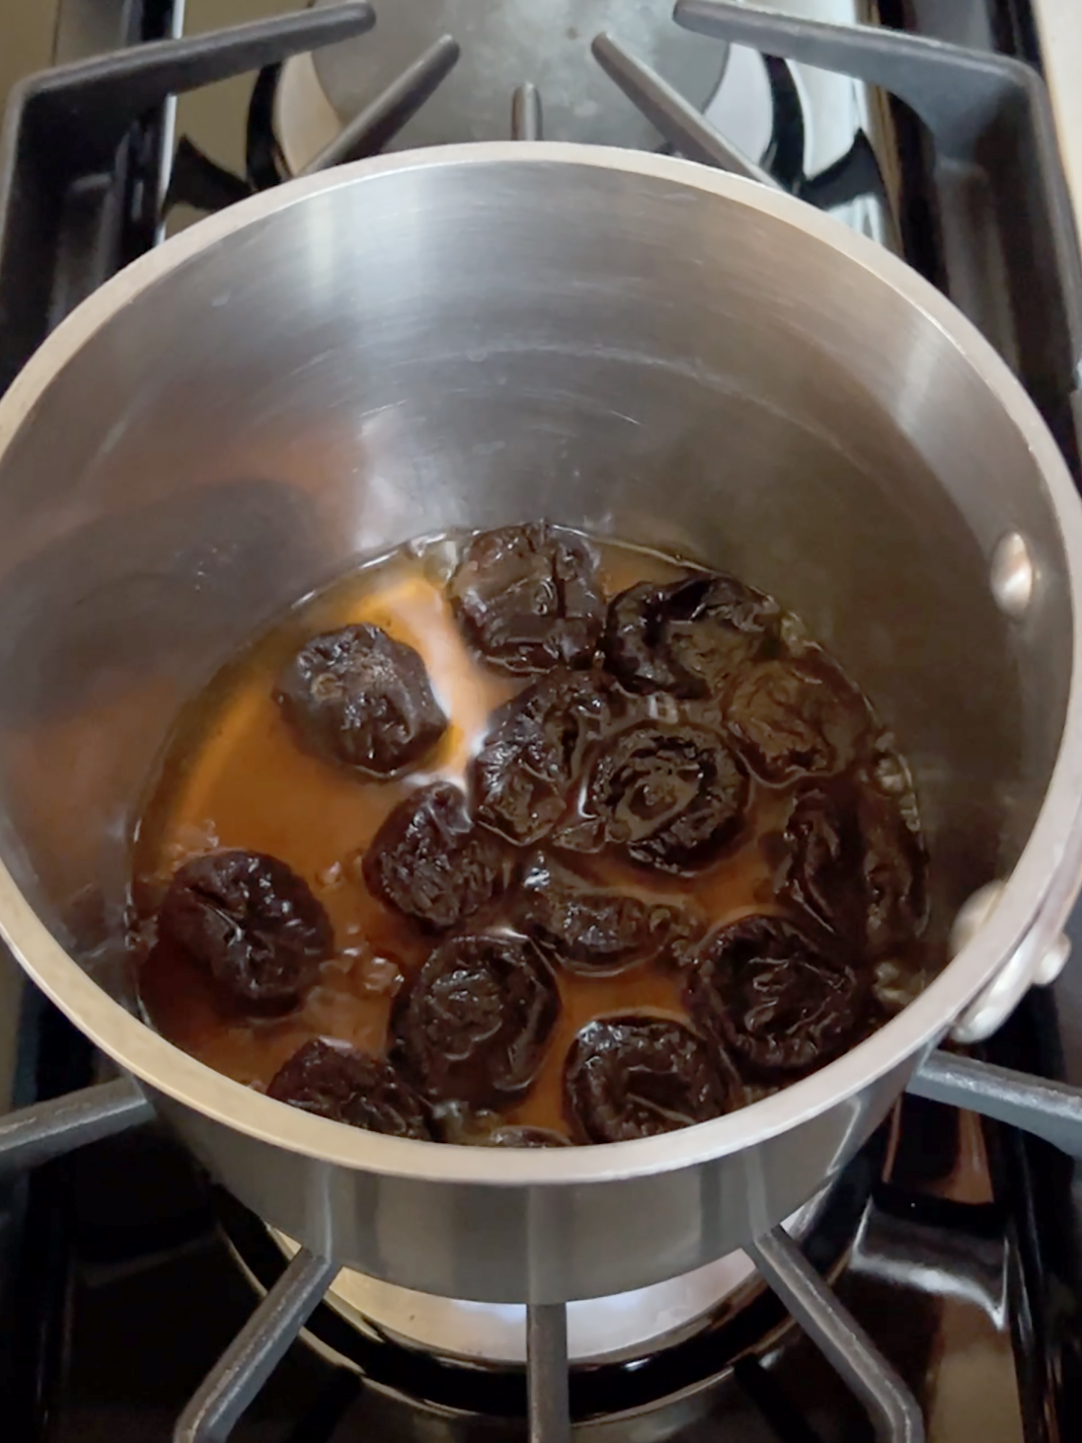 Prunes simmering in the pot.